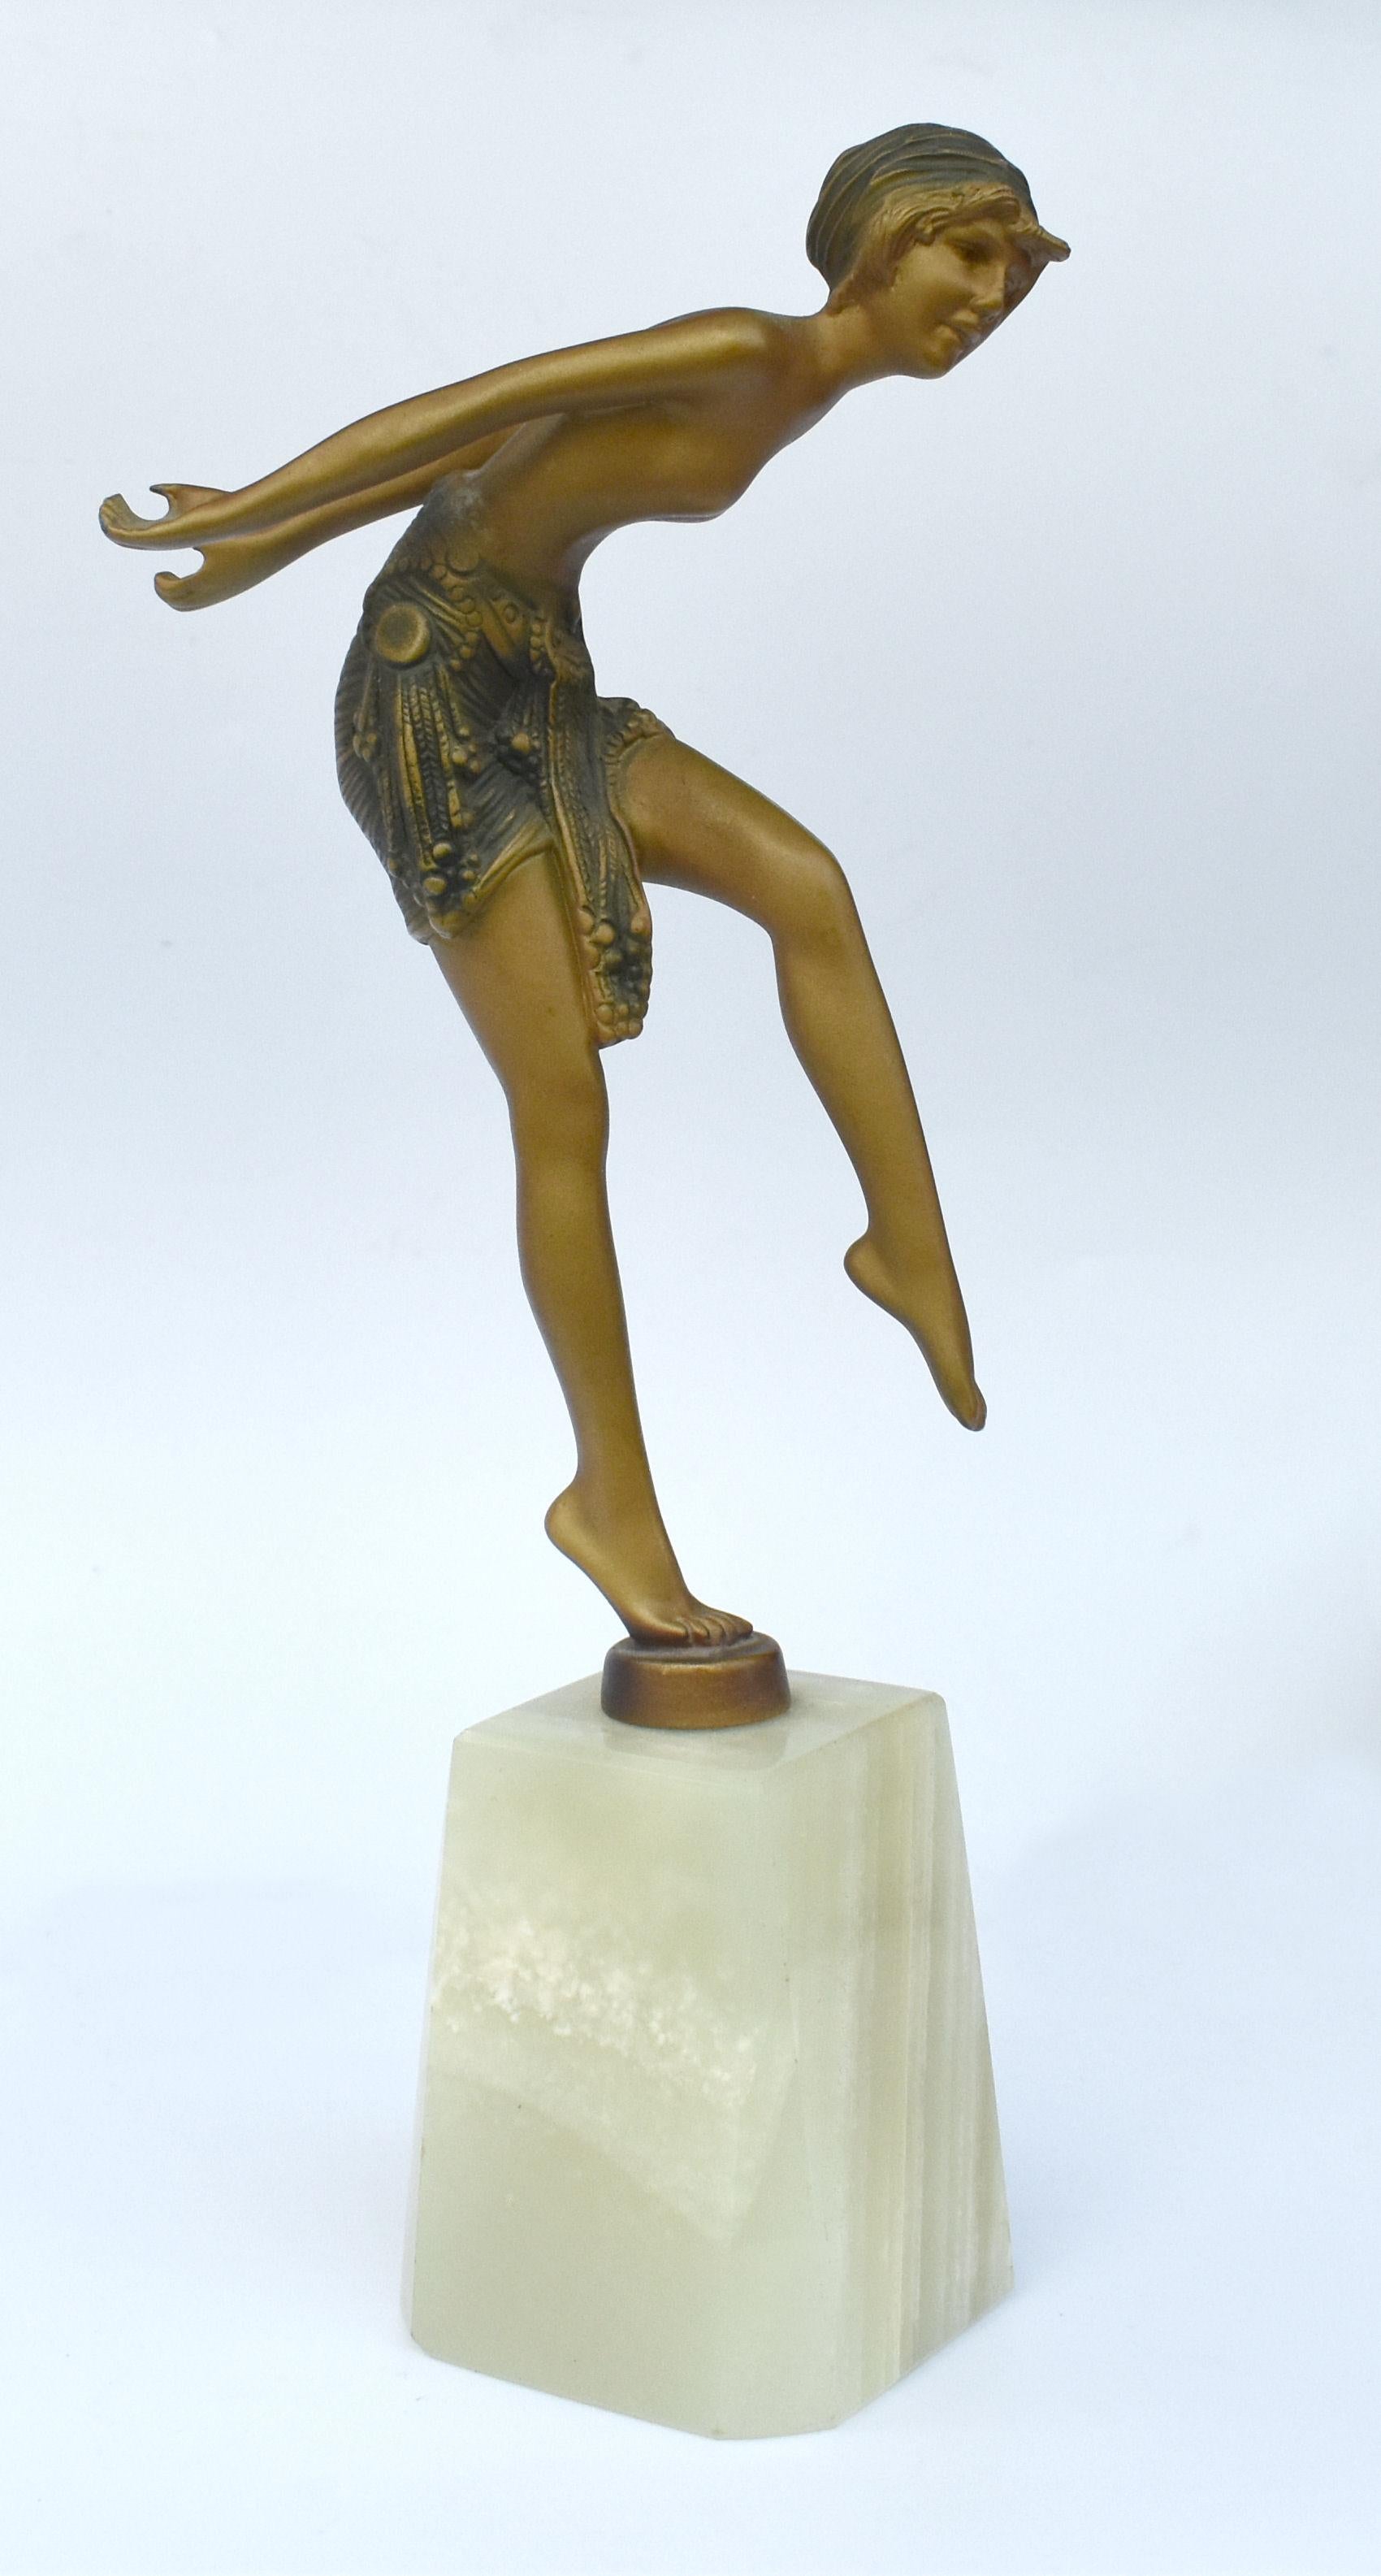 Une très élégante et originale figurine Art Déco des années 1930 d'une dame en Spelter peint à froid. Elle repose sur un socle en onyx qui est en bon état et exempt de tout dommage. Elle est en excellent état, avec des signes d'usure normaux mais